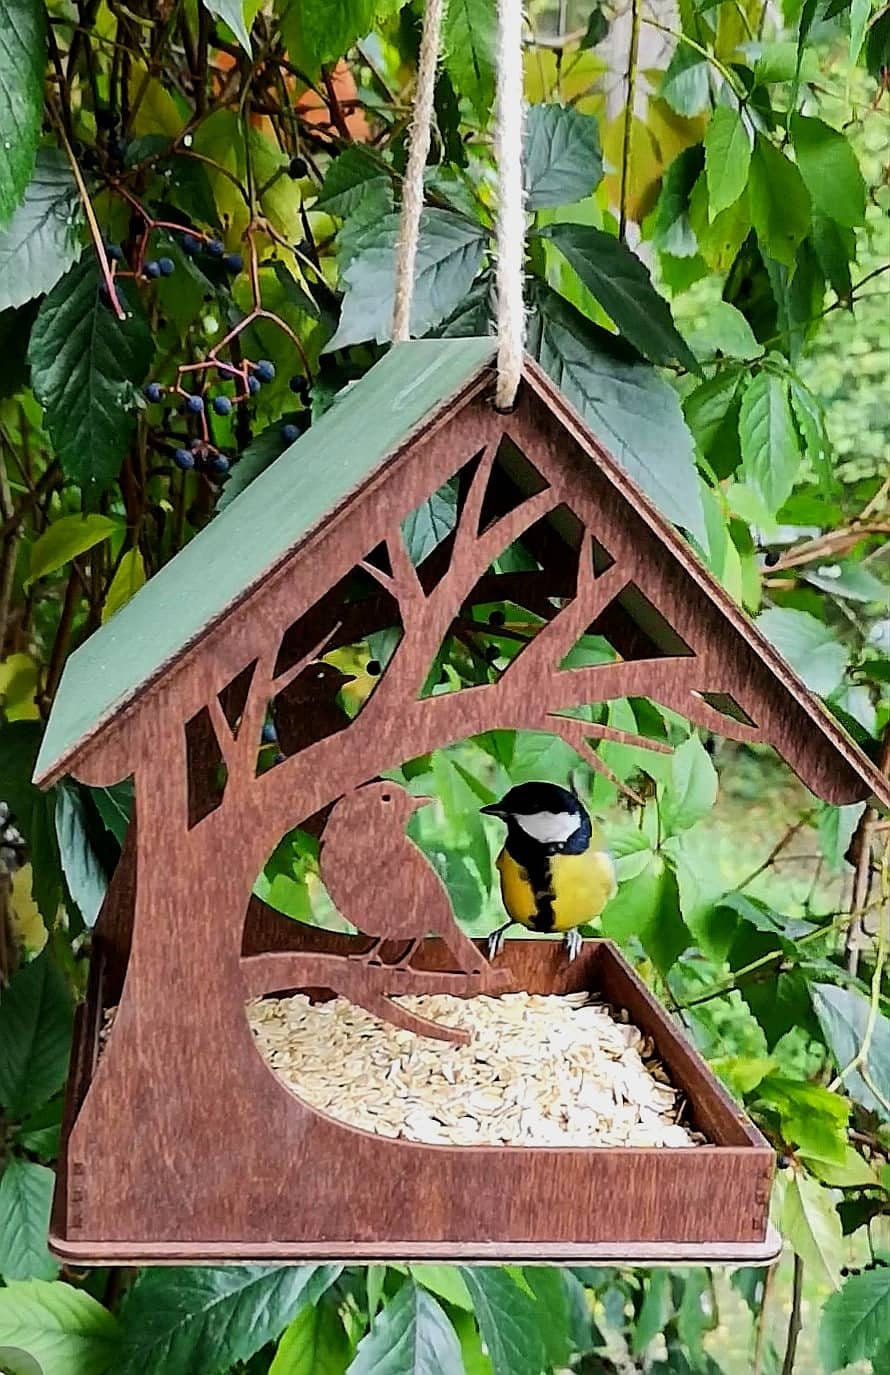 Mangeoire oiseaux extérieur stable en bois naturel - Modele Sweet